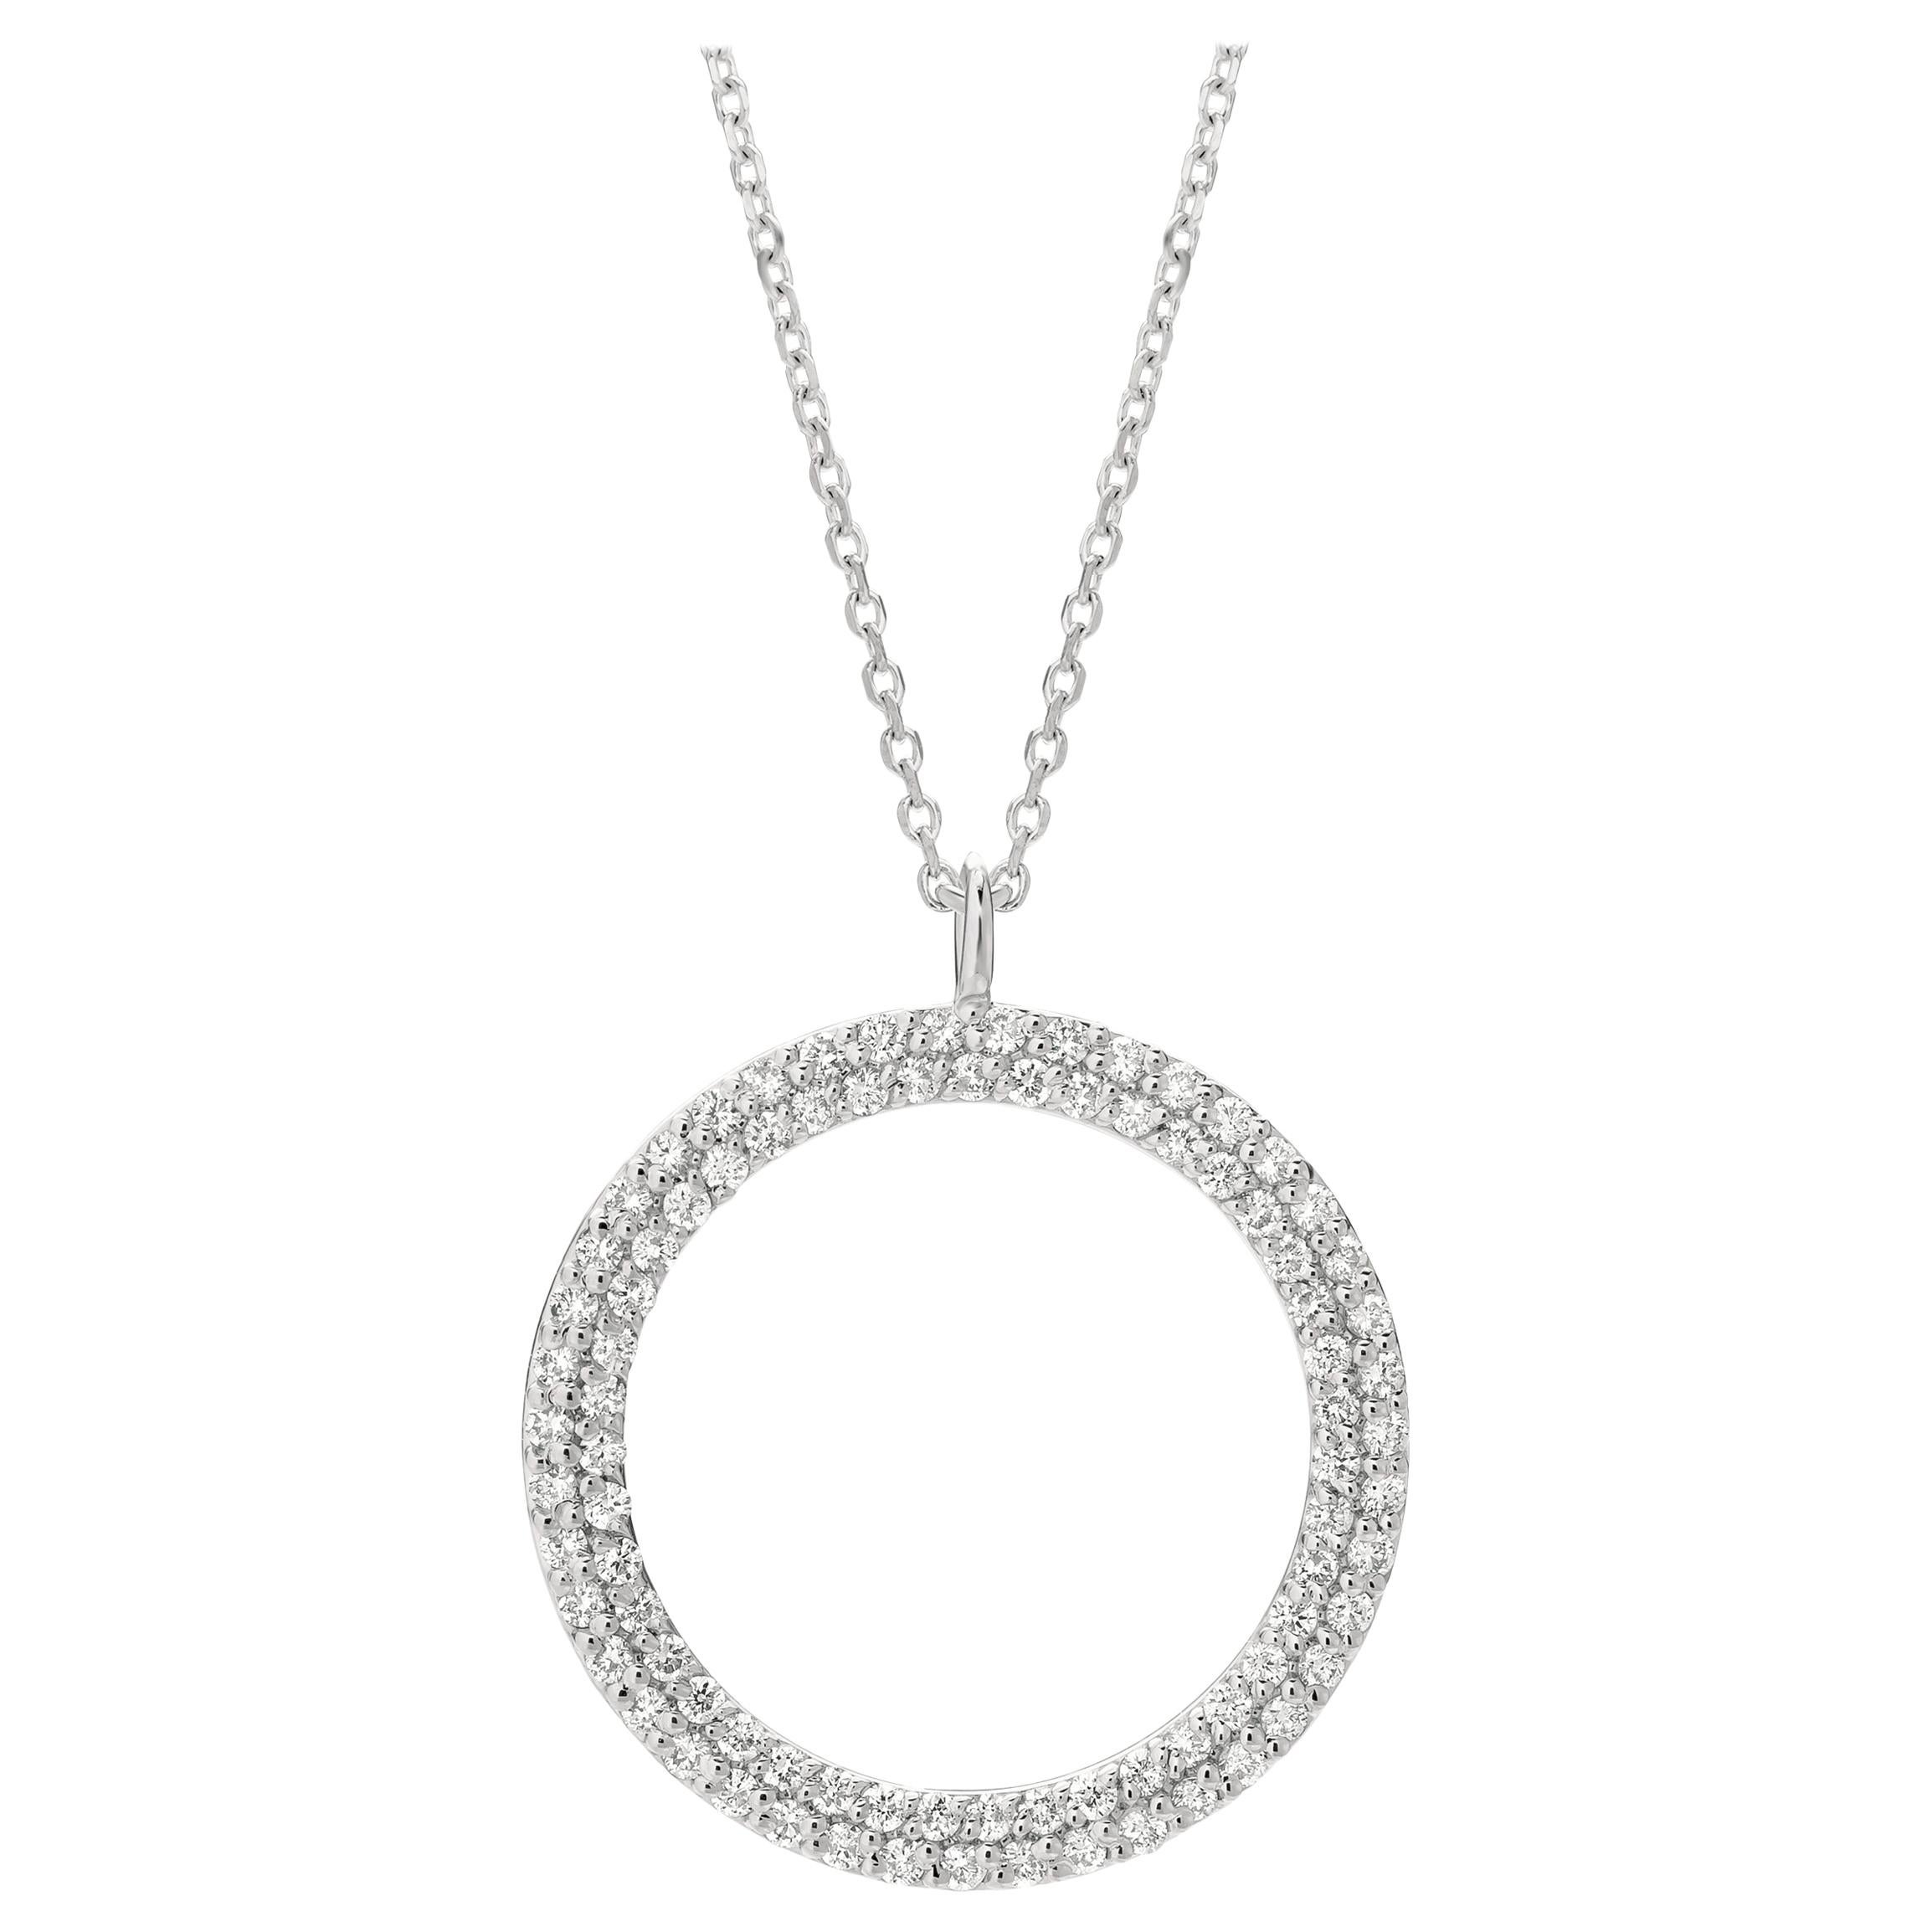 0.75 Carat Natural Diamond Circle Necklace 14 Karat White Gold G SI